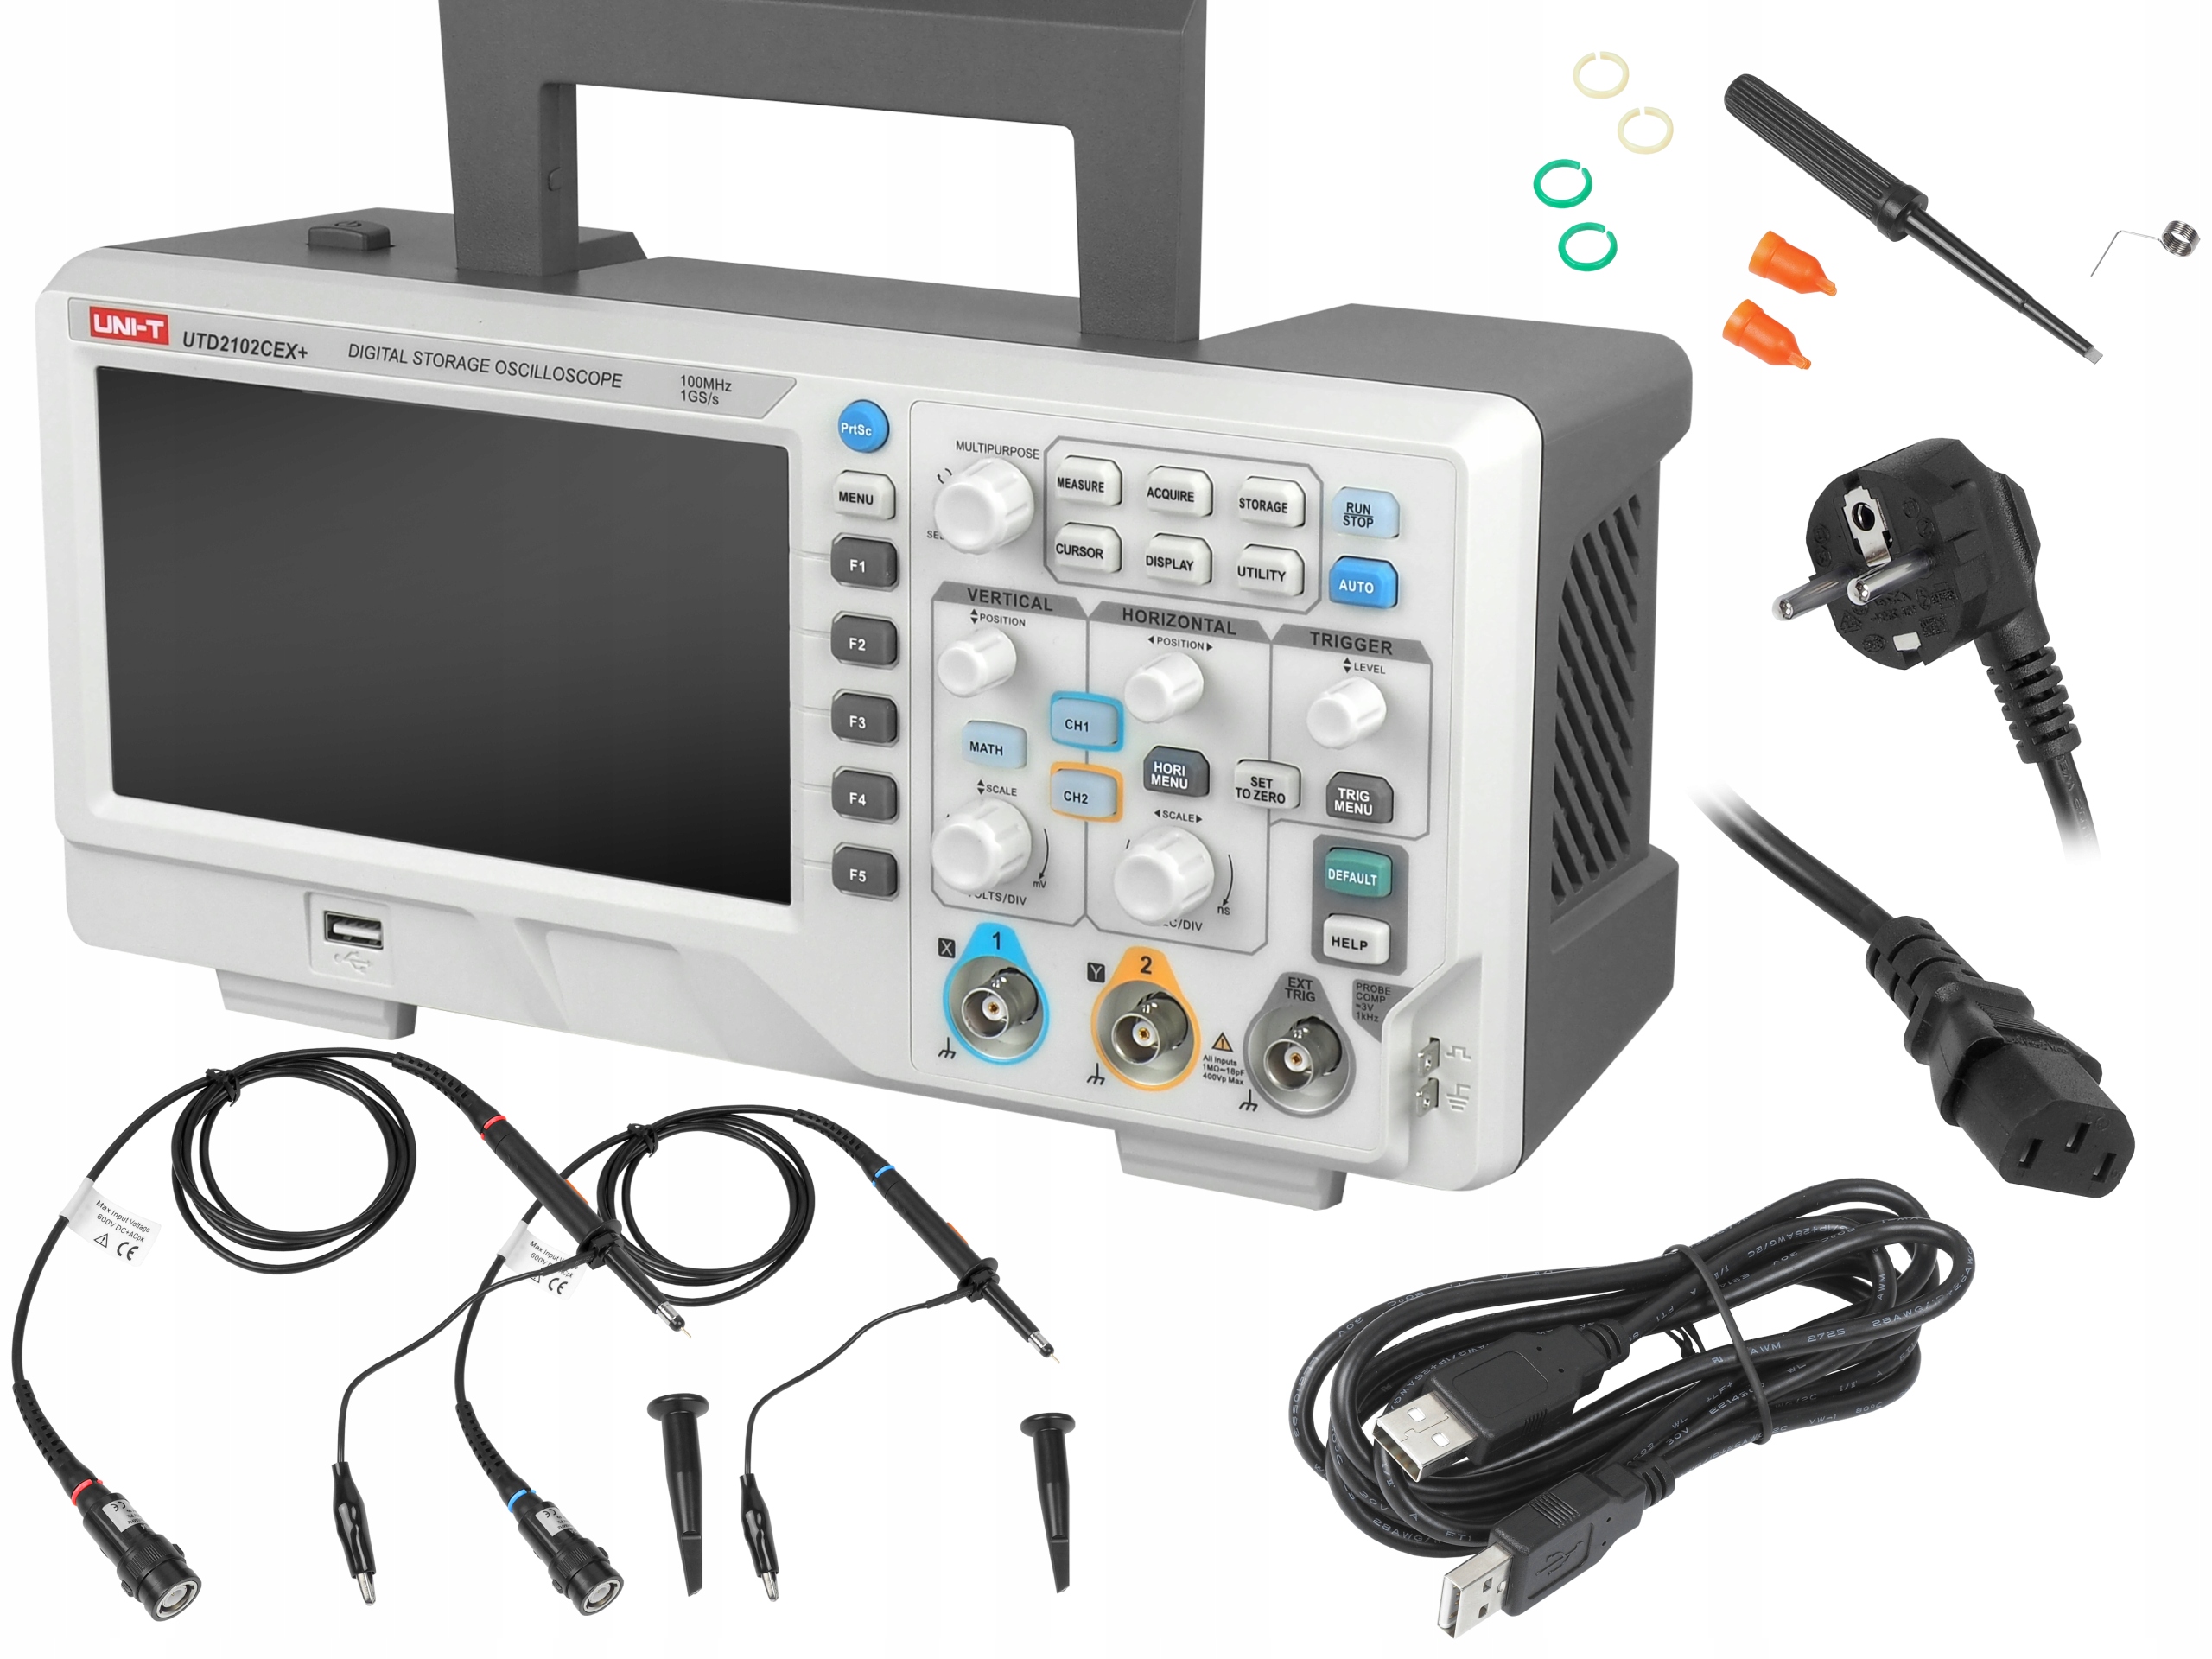 Osciloskop Profesionální Digitální Měřič Uni-t UTD2102CEX+ 100Mhz